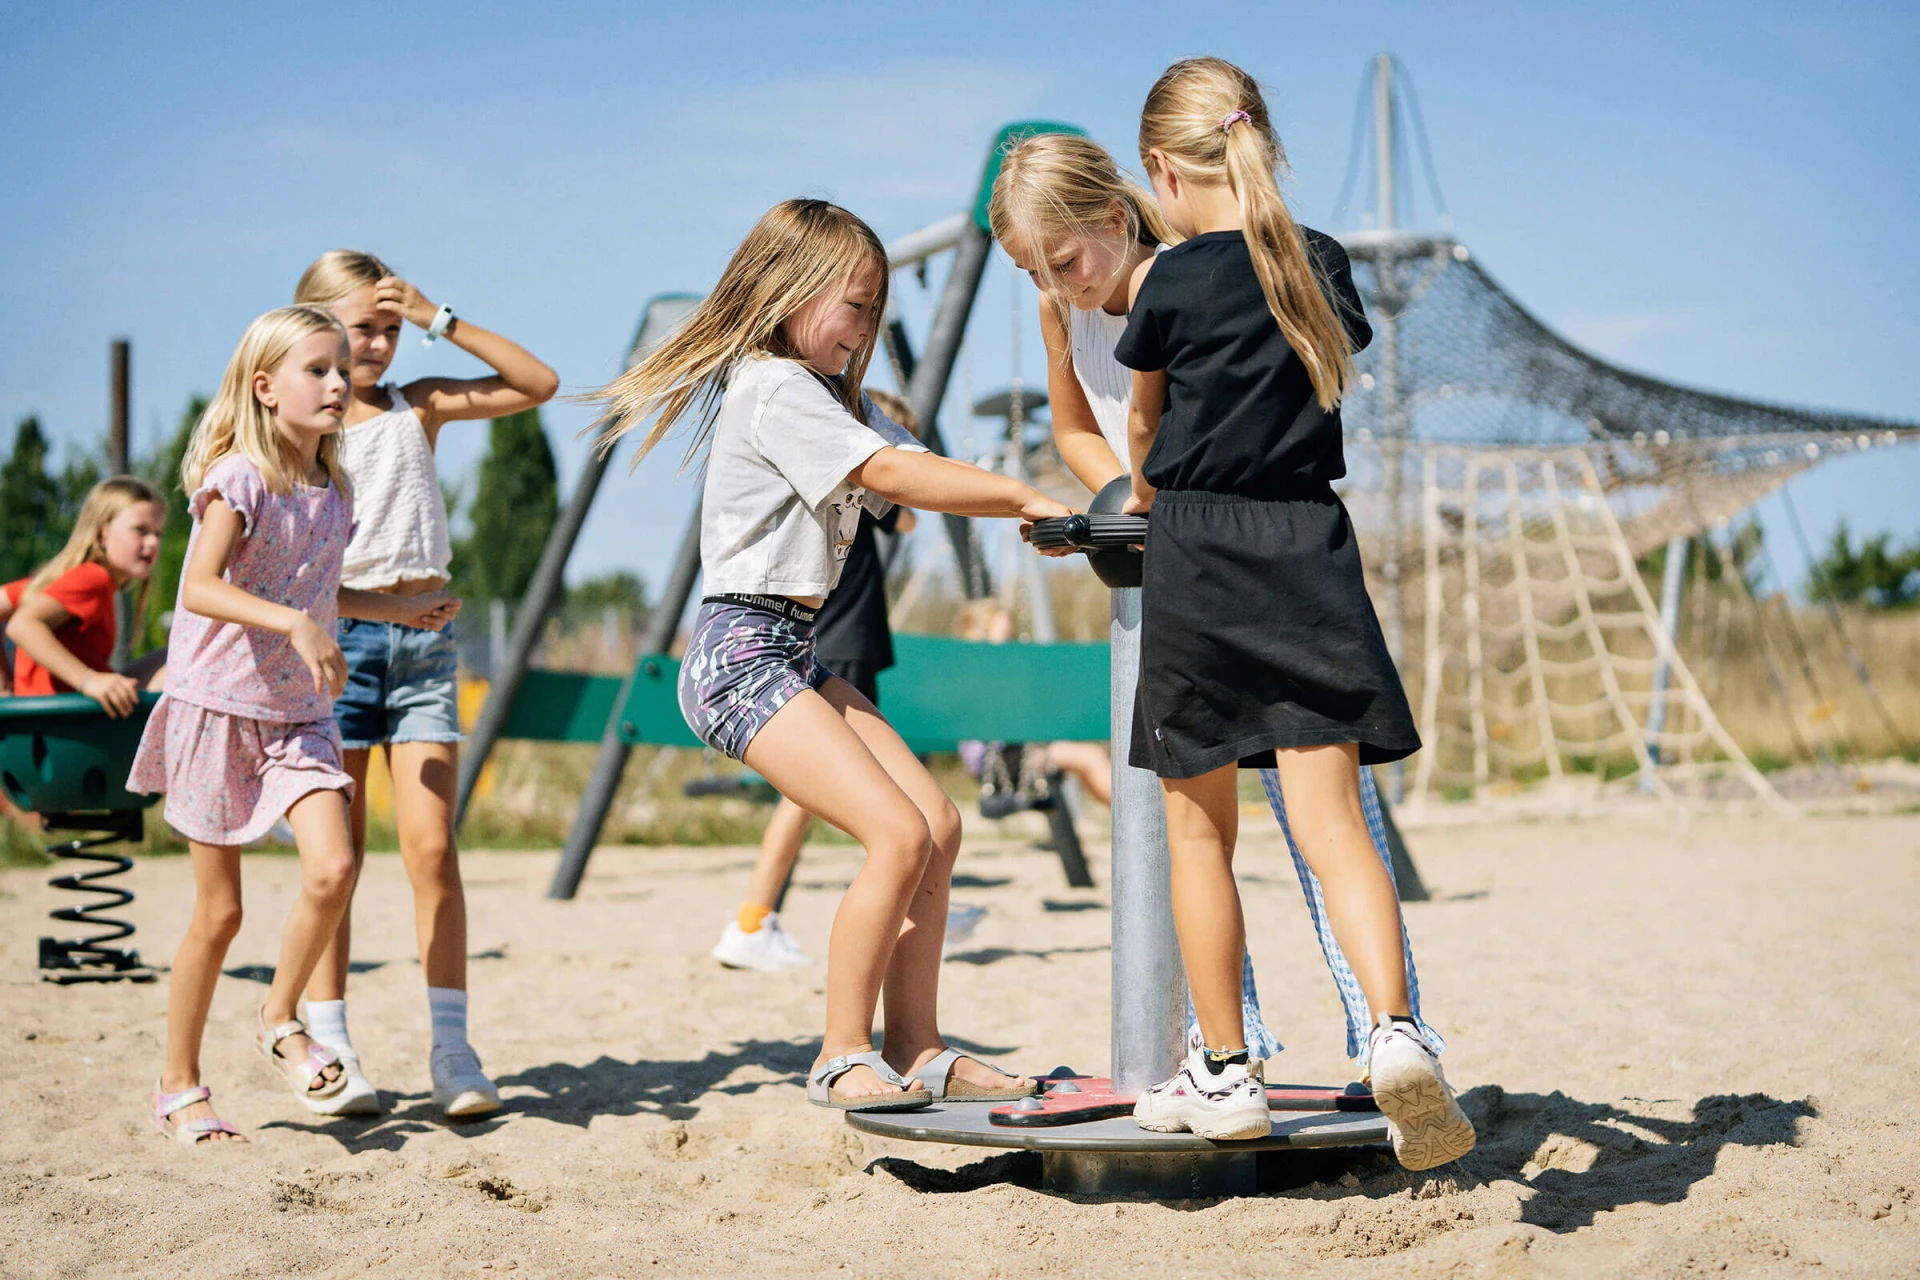 Bambine che si divertono sulla giostra scooter in un parco giochi KOMPAN